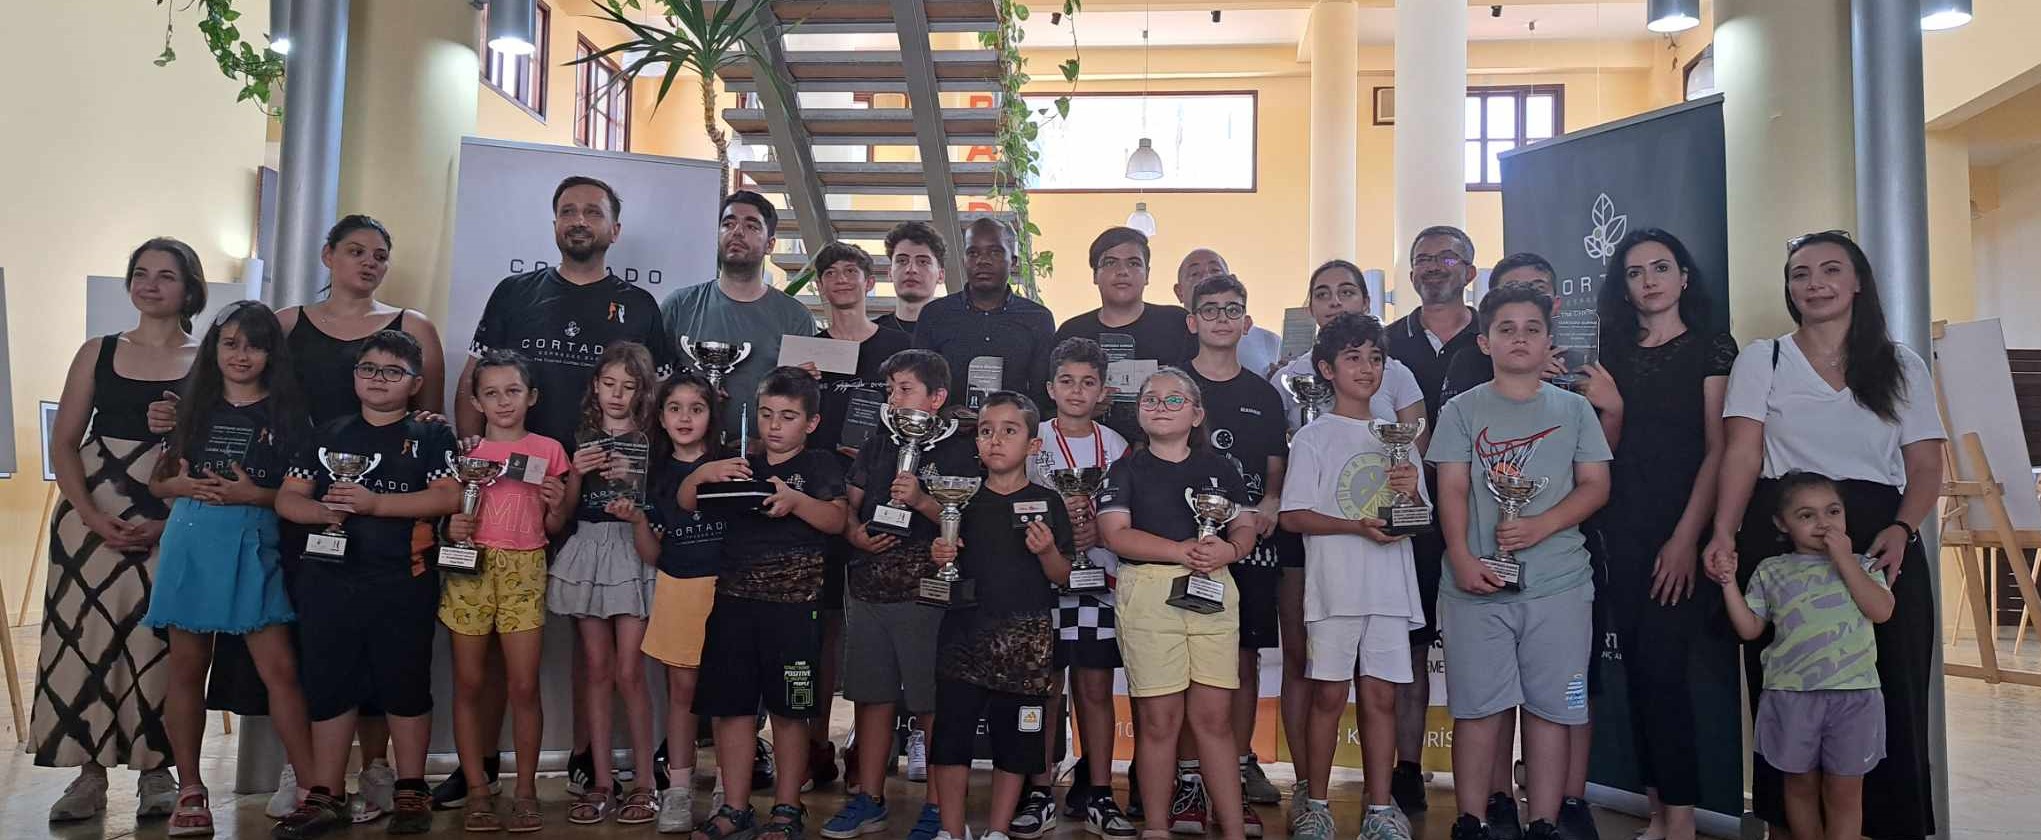 Cortado Kupası Kapanış Yıldırım Turnuvası tamamlandı ve Dörtleme Turnuvası’nın da  ödül töreni gerçekleşti